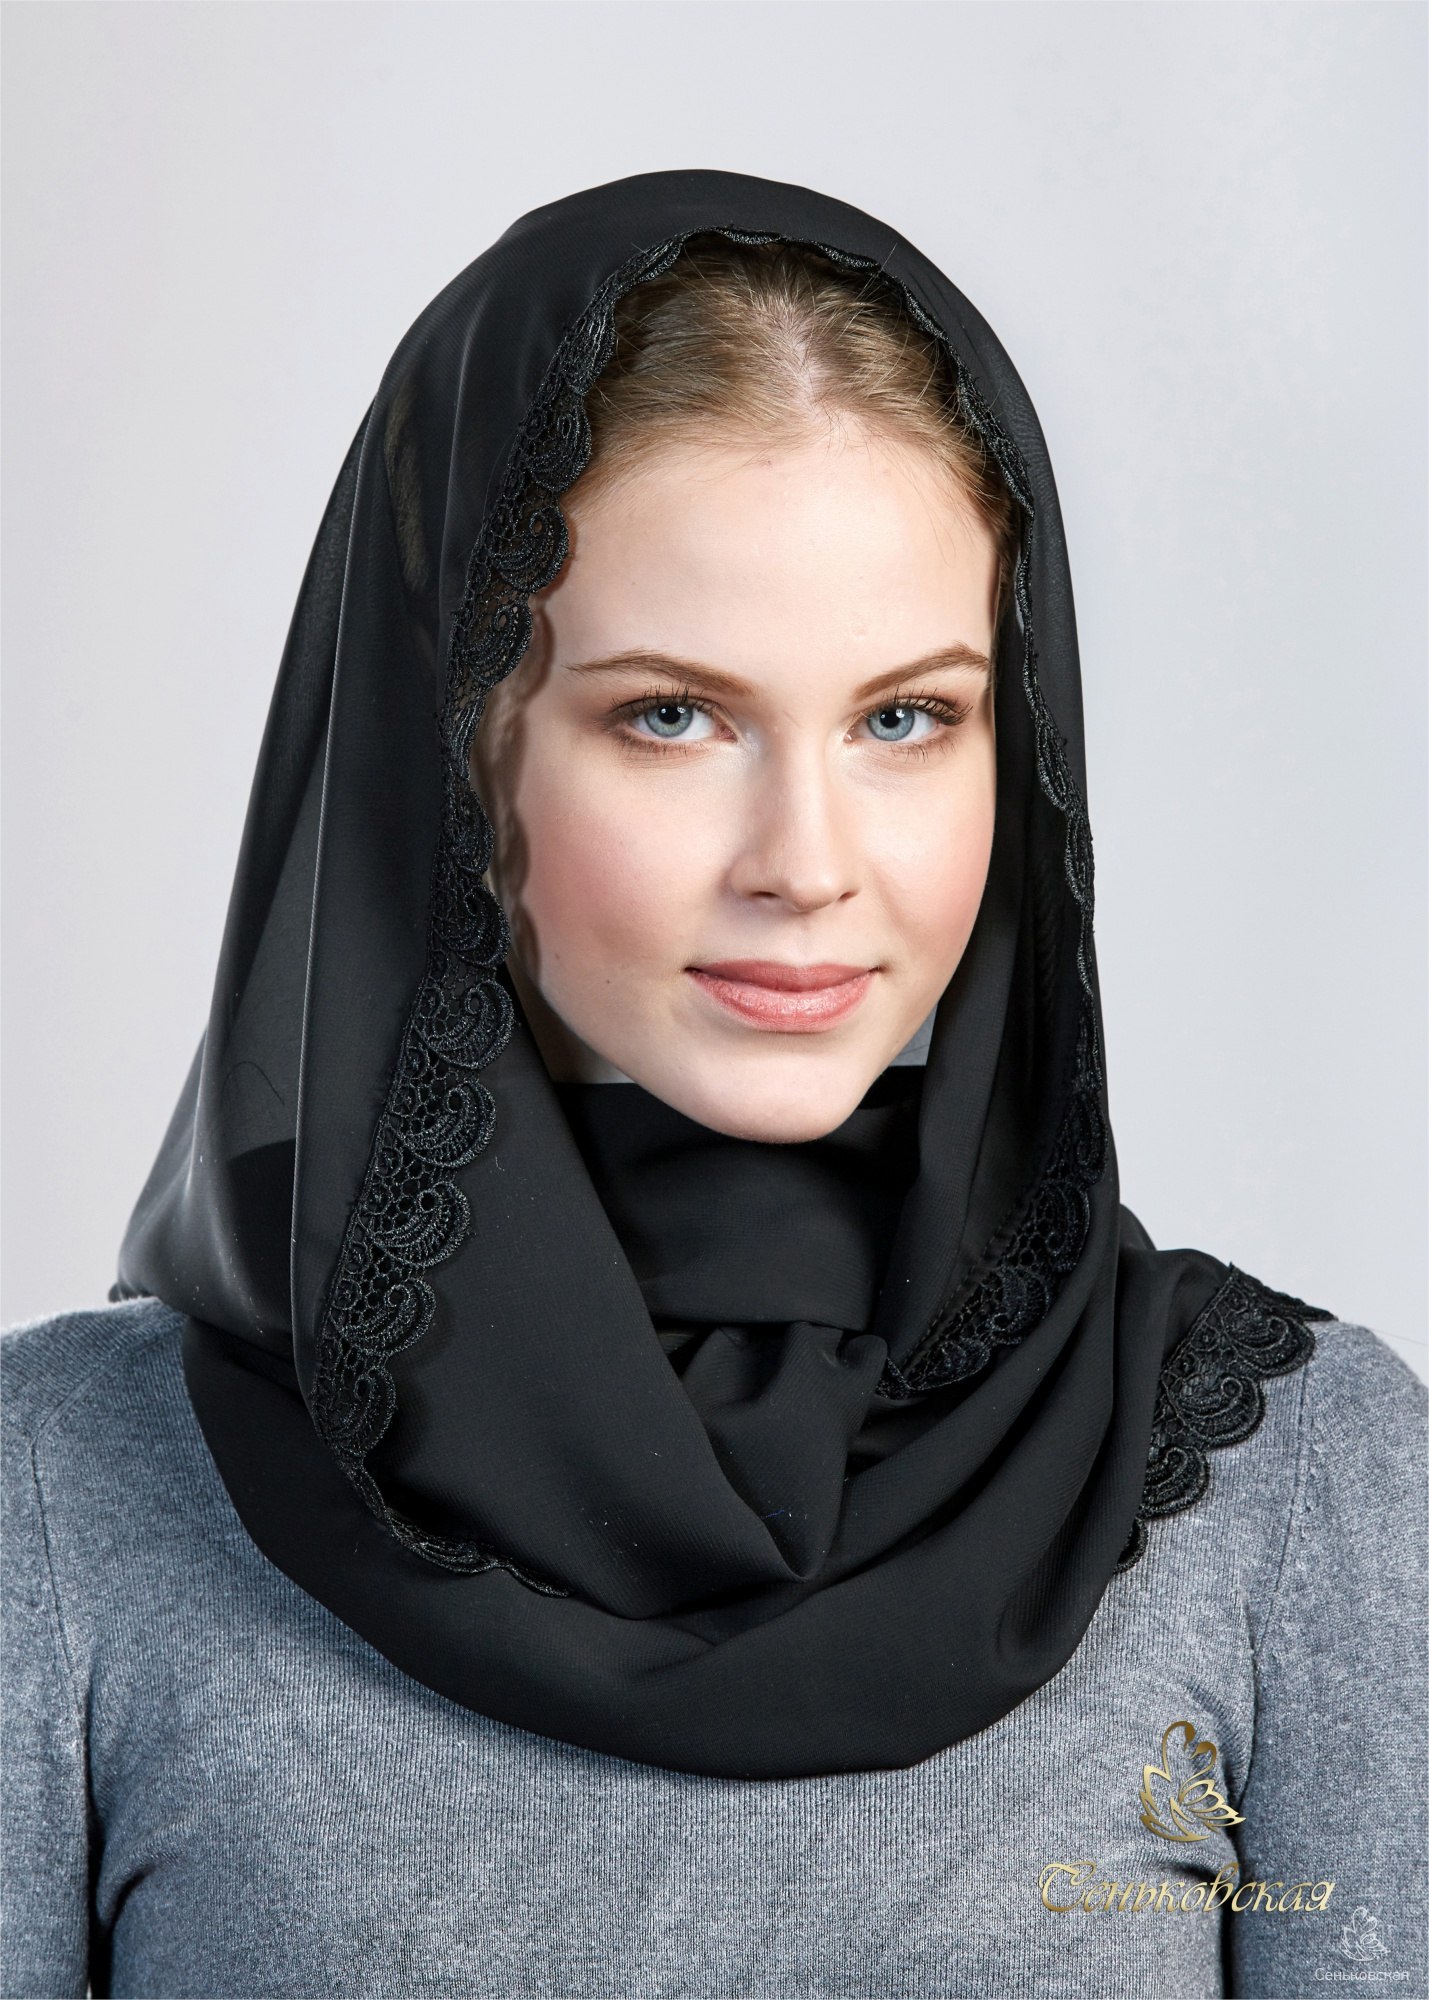 Черный платок 40. Платок. Женщина в черном платке. Черный платок. Платок женский на голову.